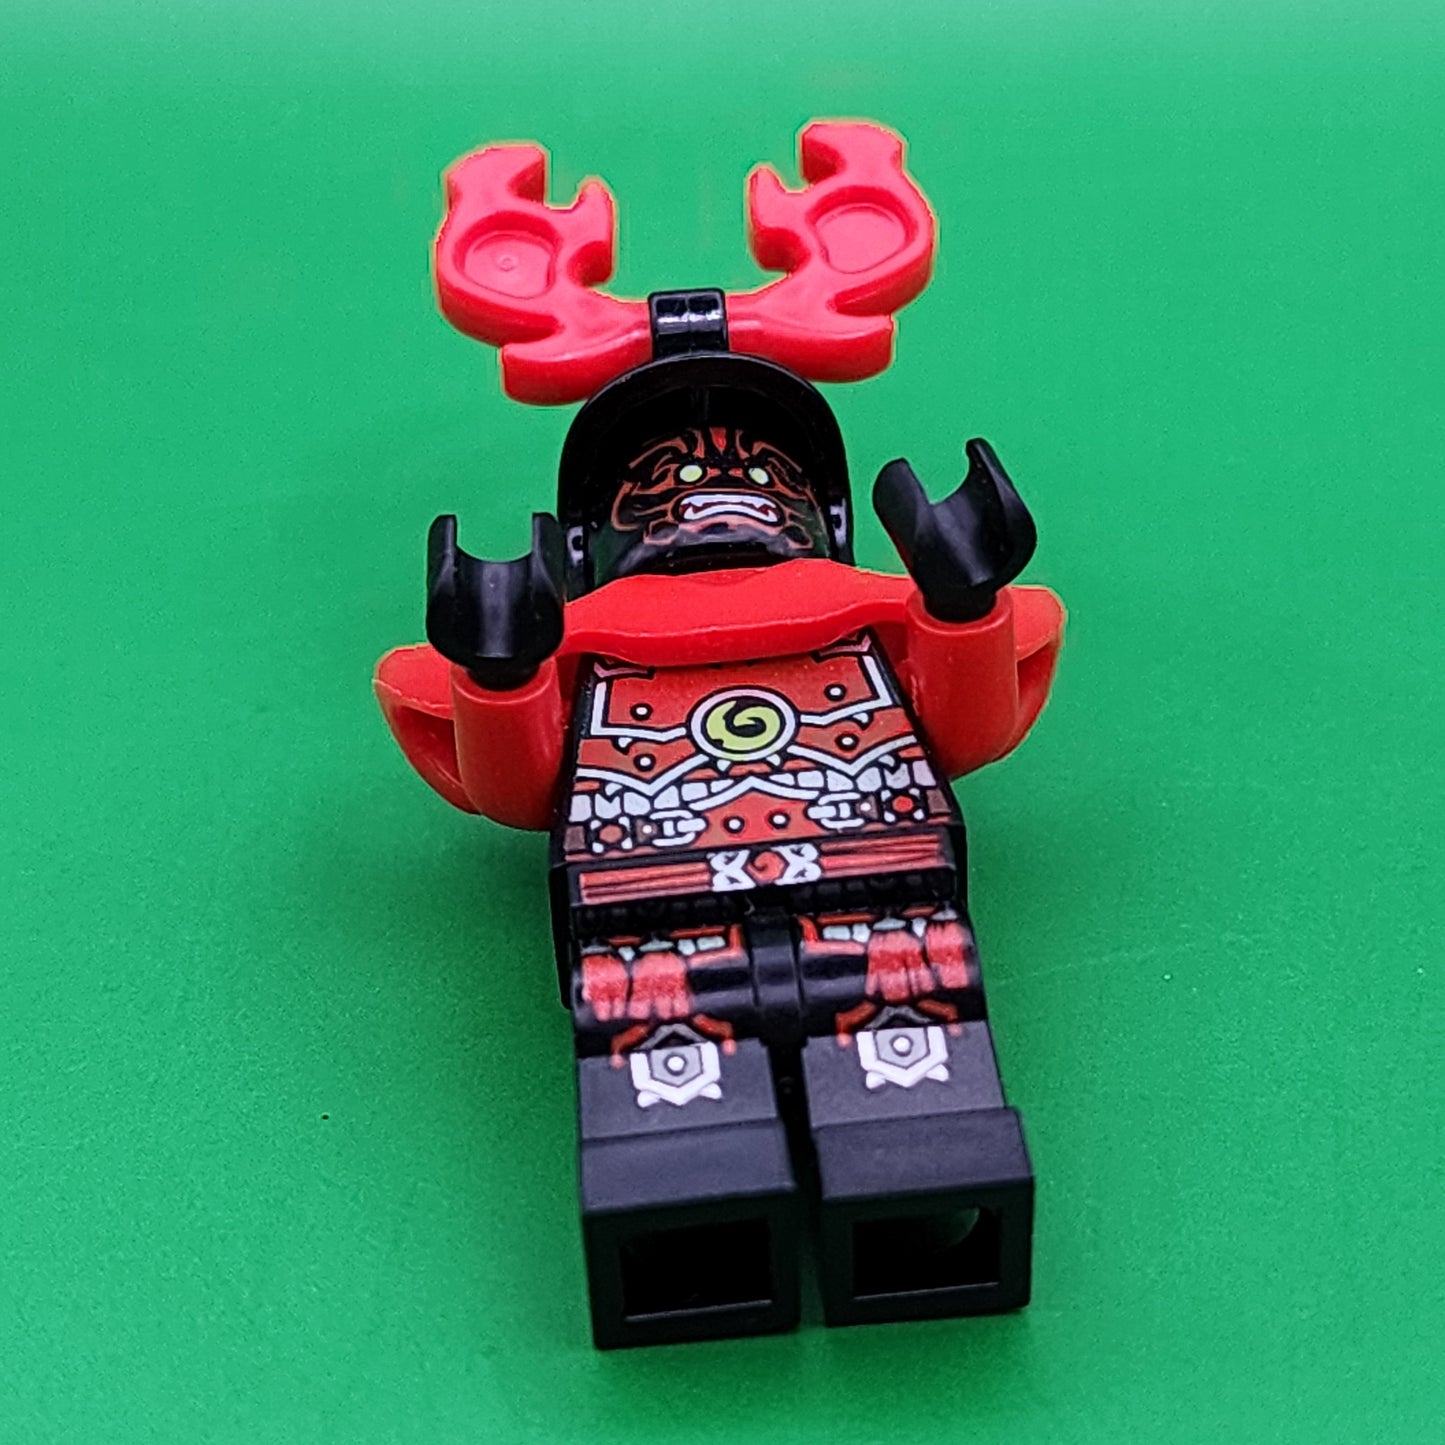 Lego Stone Army Warrior Minifigure Red Face njo075 NINJAGO